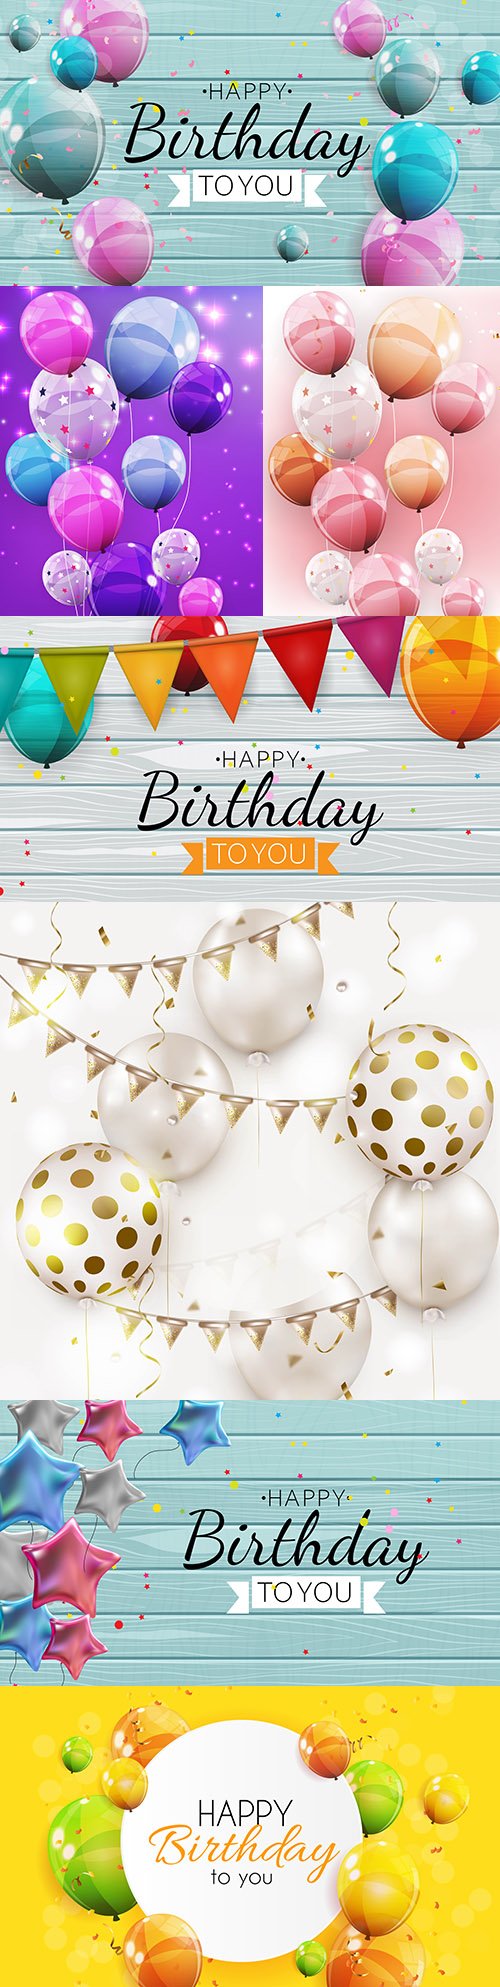 Happy birthday holiday invitation realistic balloons 17